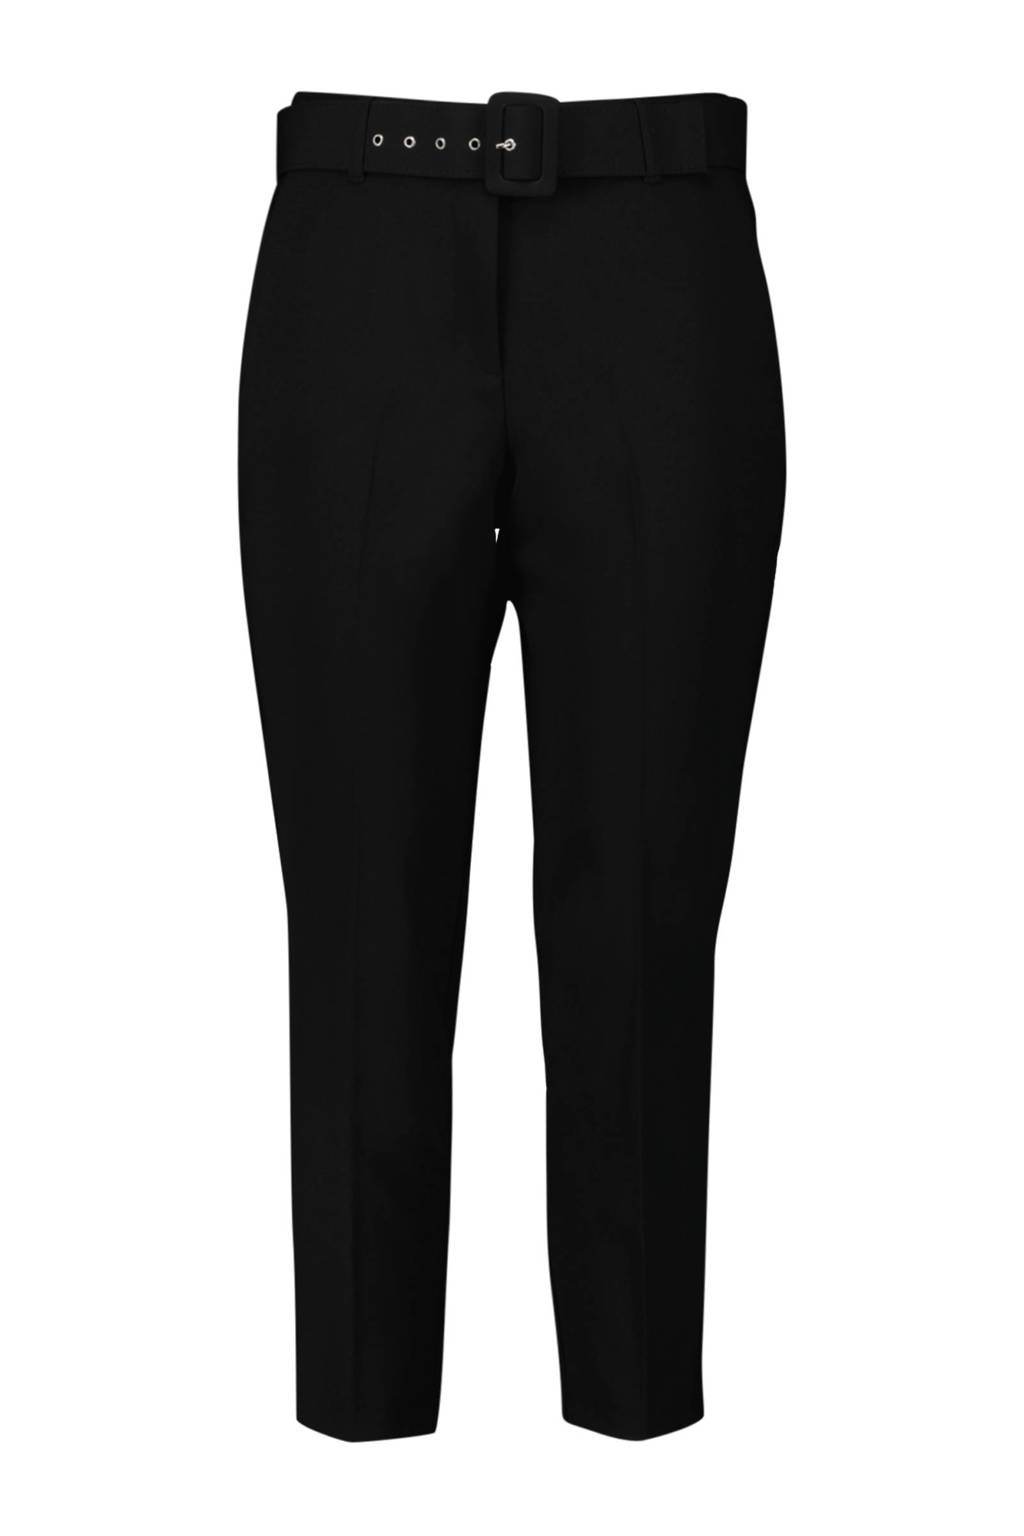 MS Mode slim fit pantalon zwart